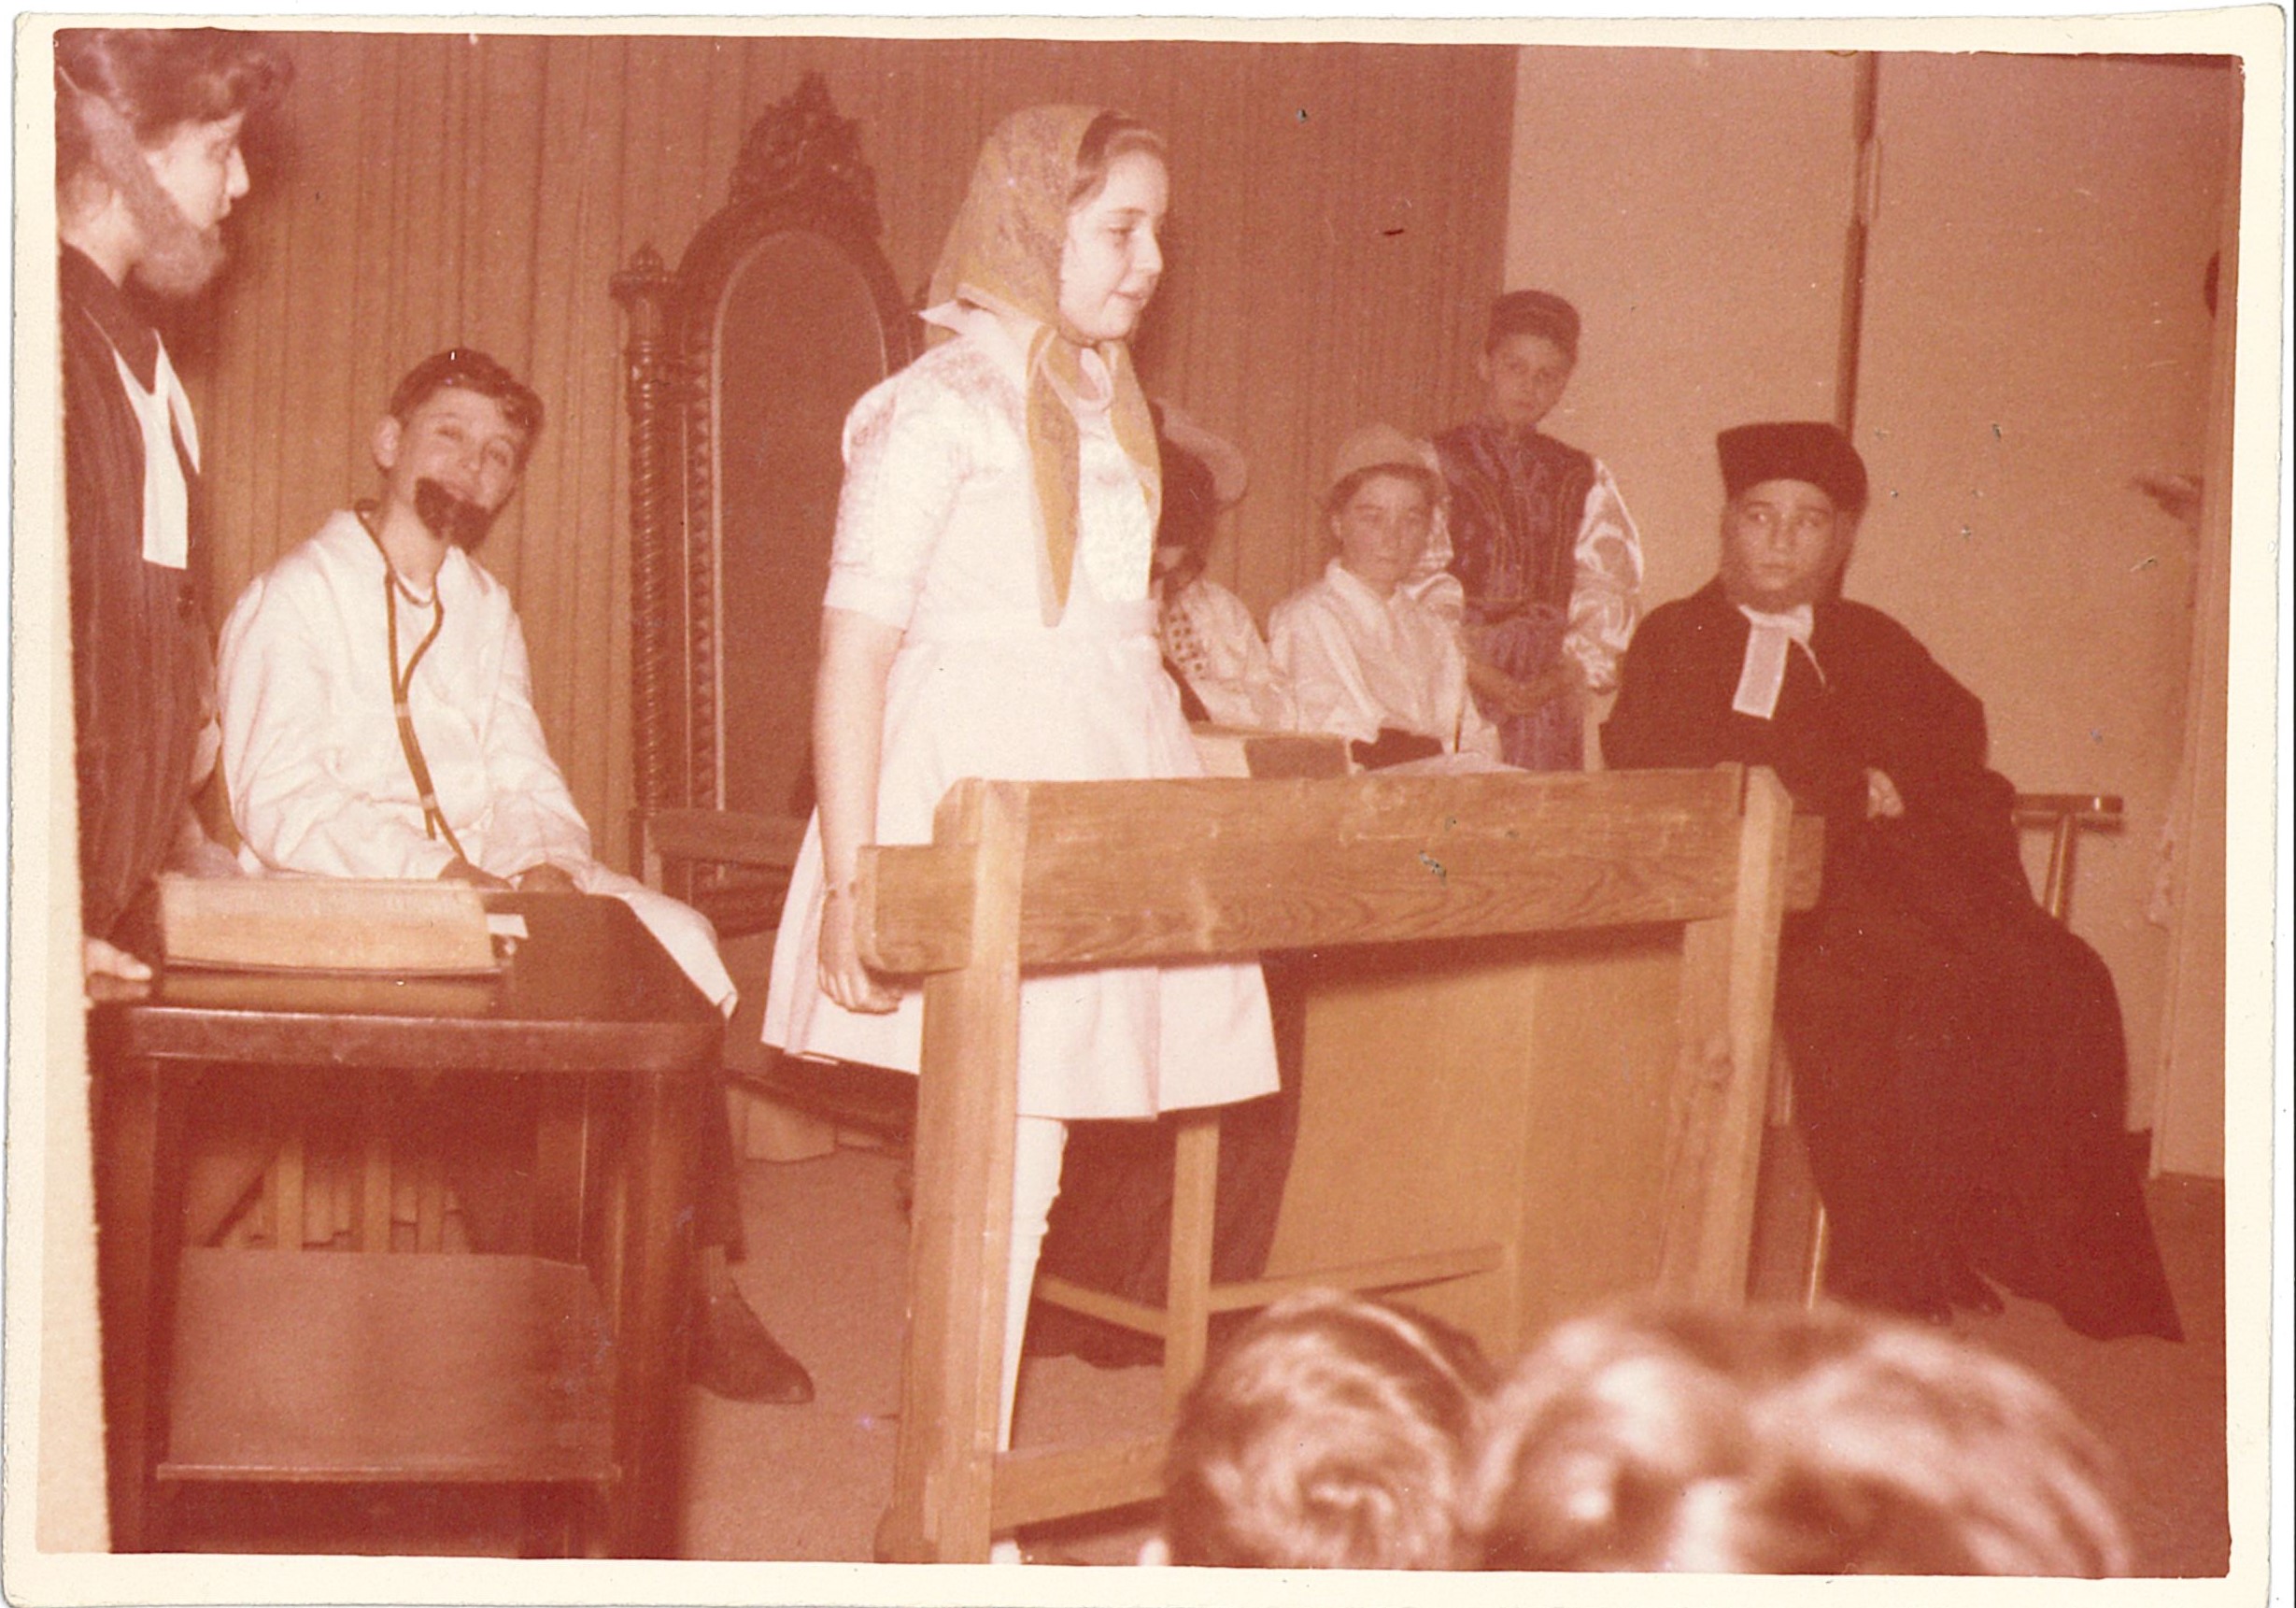 Theateraufführung der Jugendgruppe, circa 1960. [Quelle: Privatarchiv Althausen]